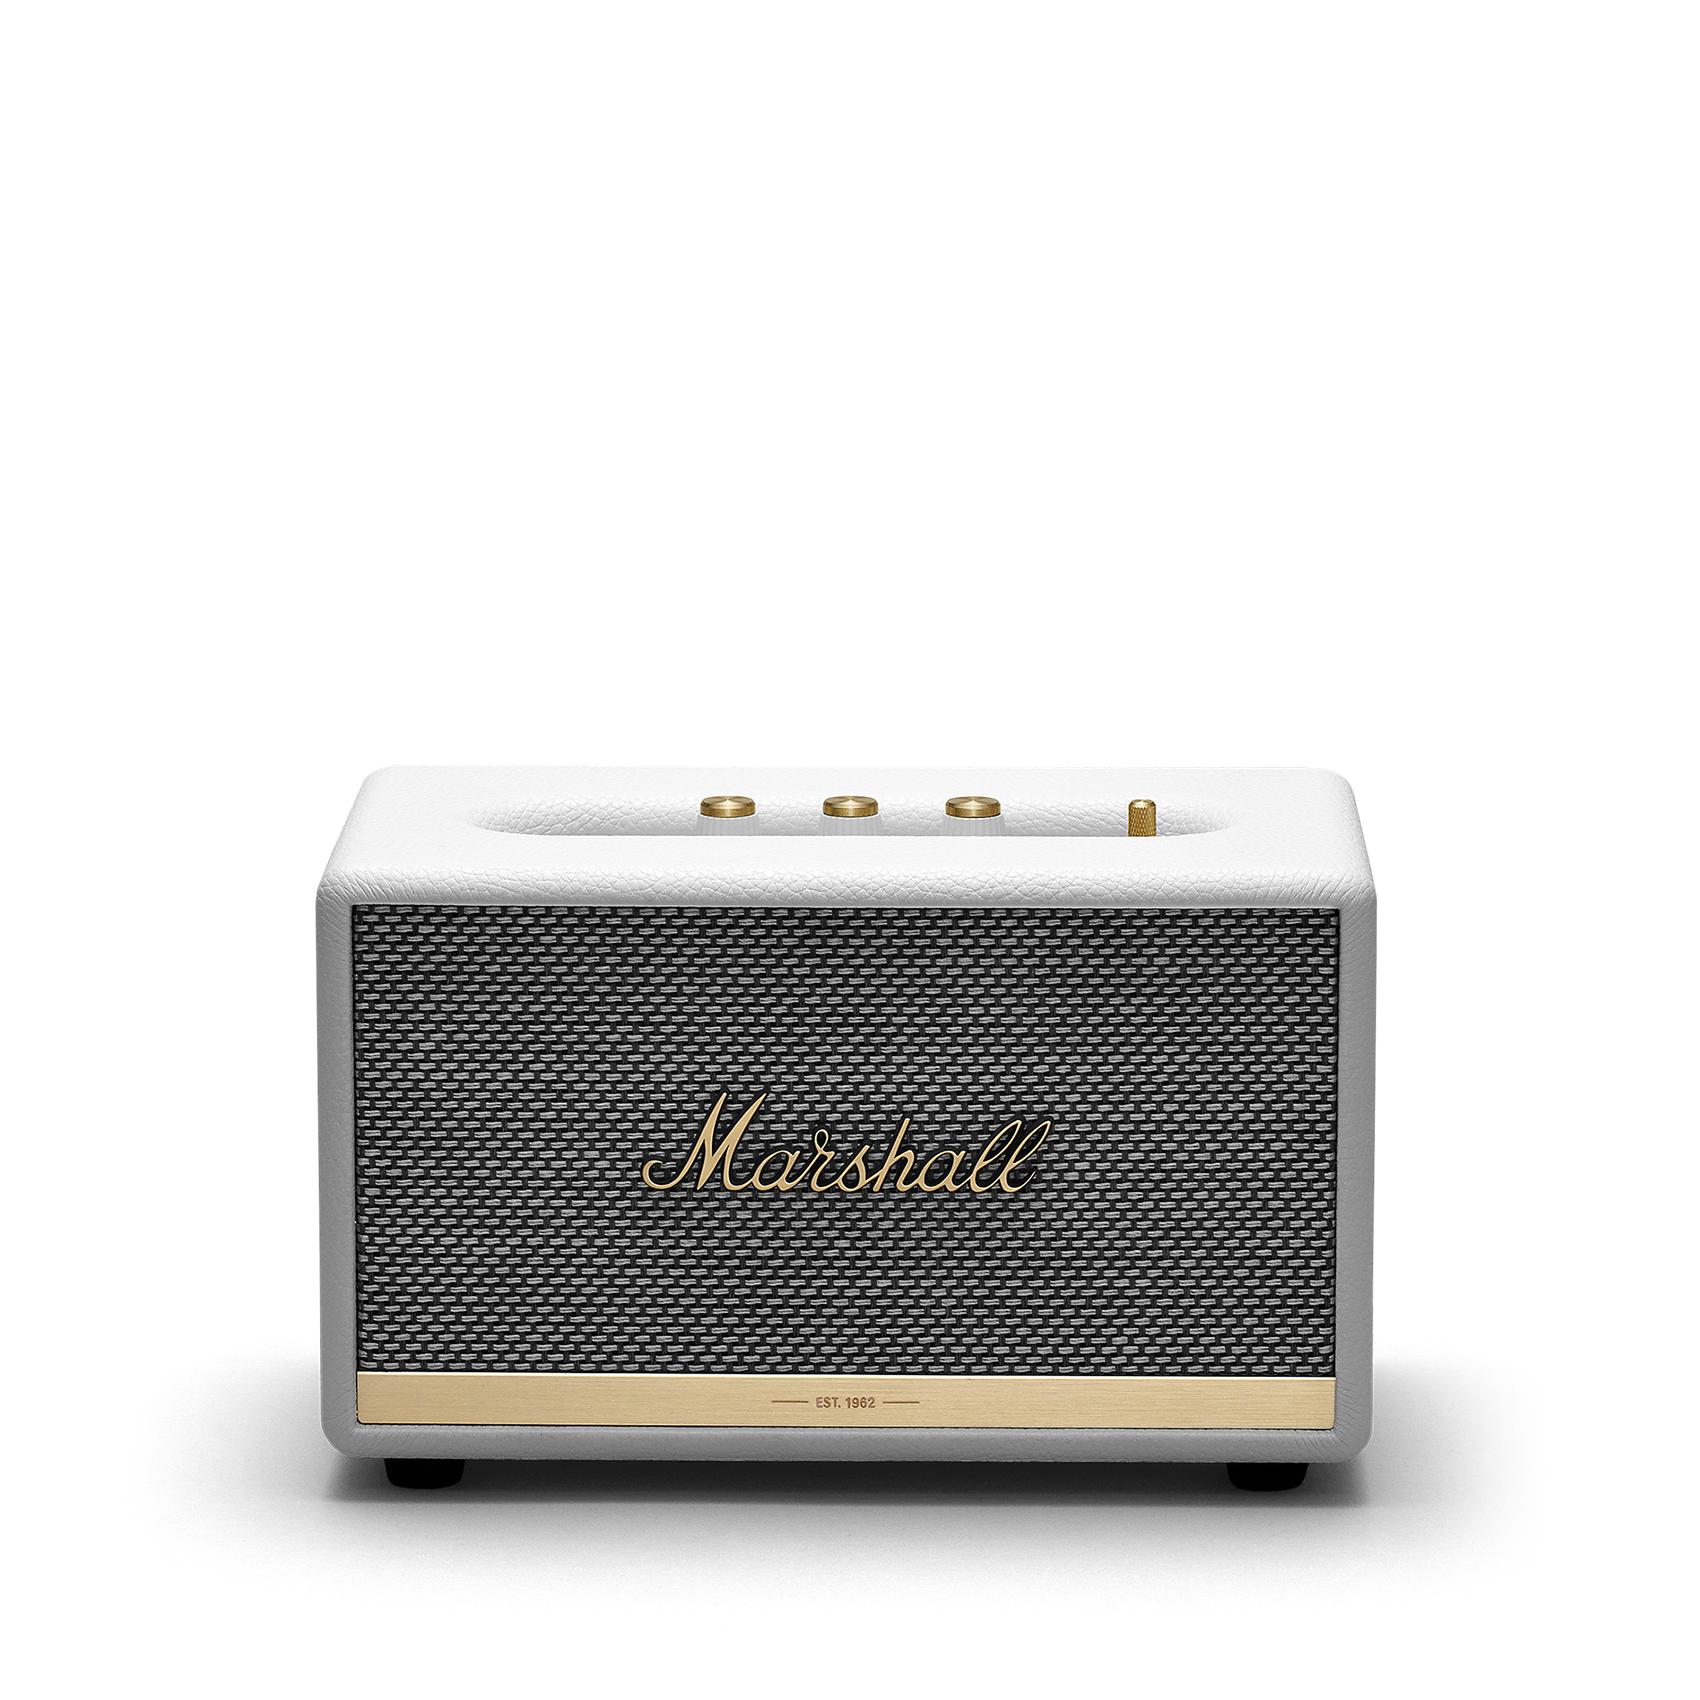 Marshall 1002481 Acton II Bluetooth Home Speaker, Black